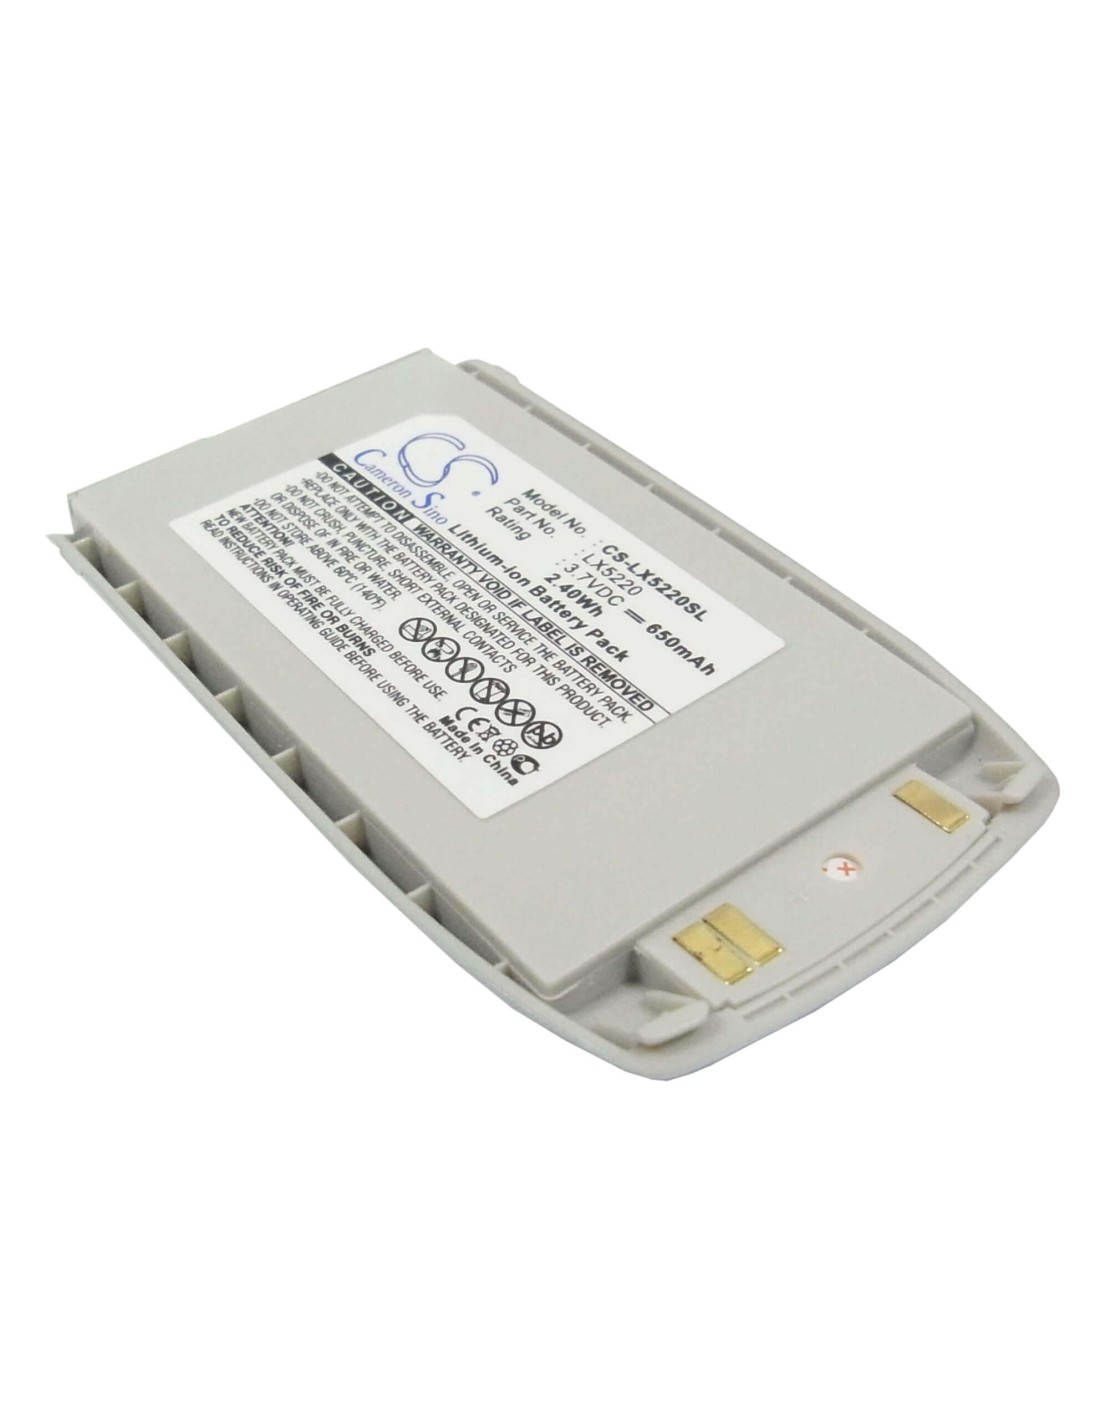 Battery for LG 5220, 5220c 3.7V, 650mAh - 2.41Wh